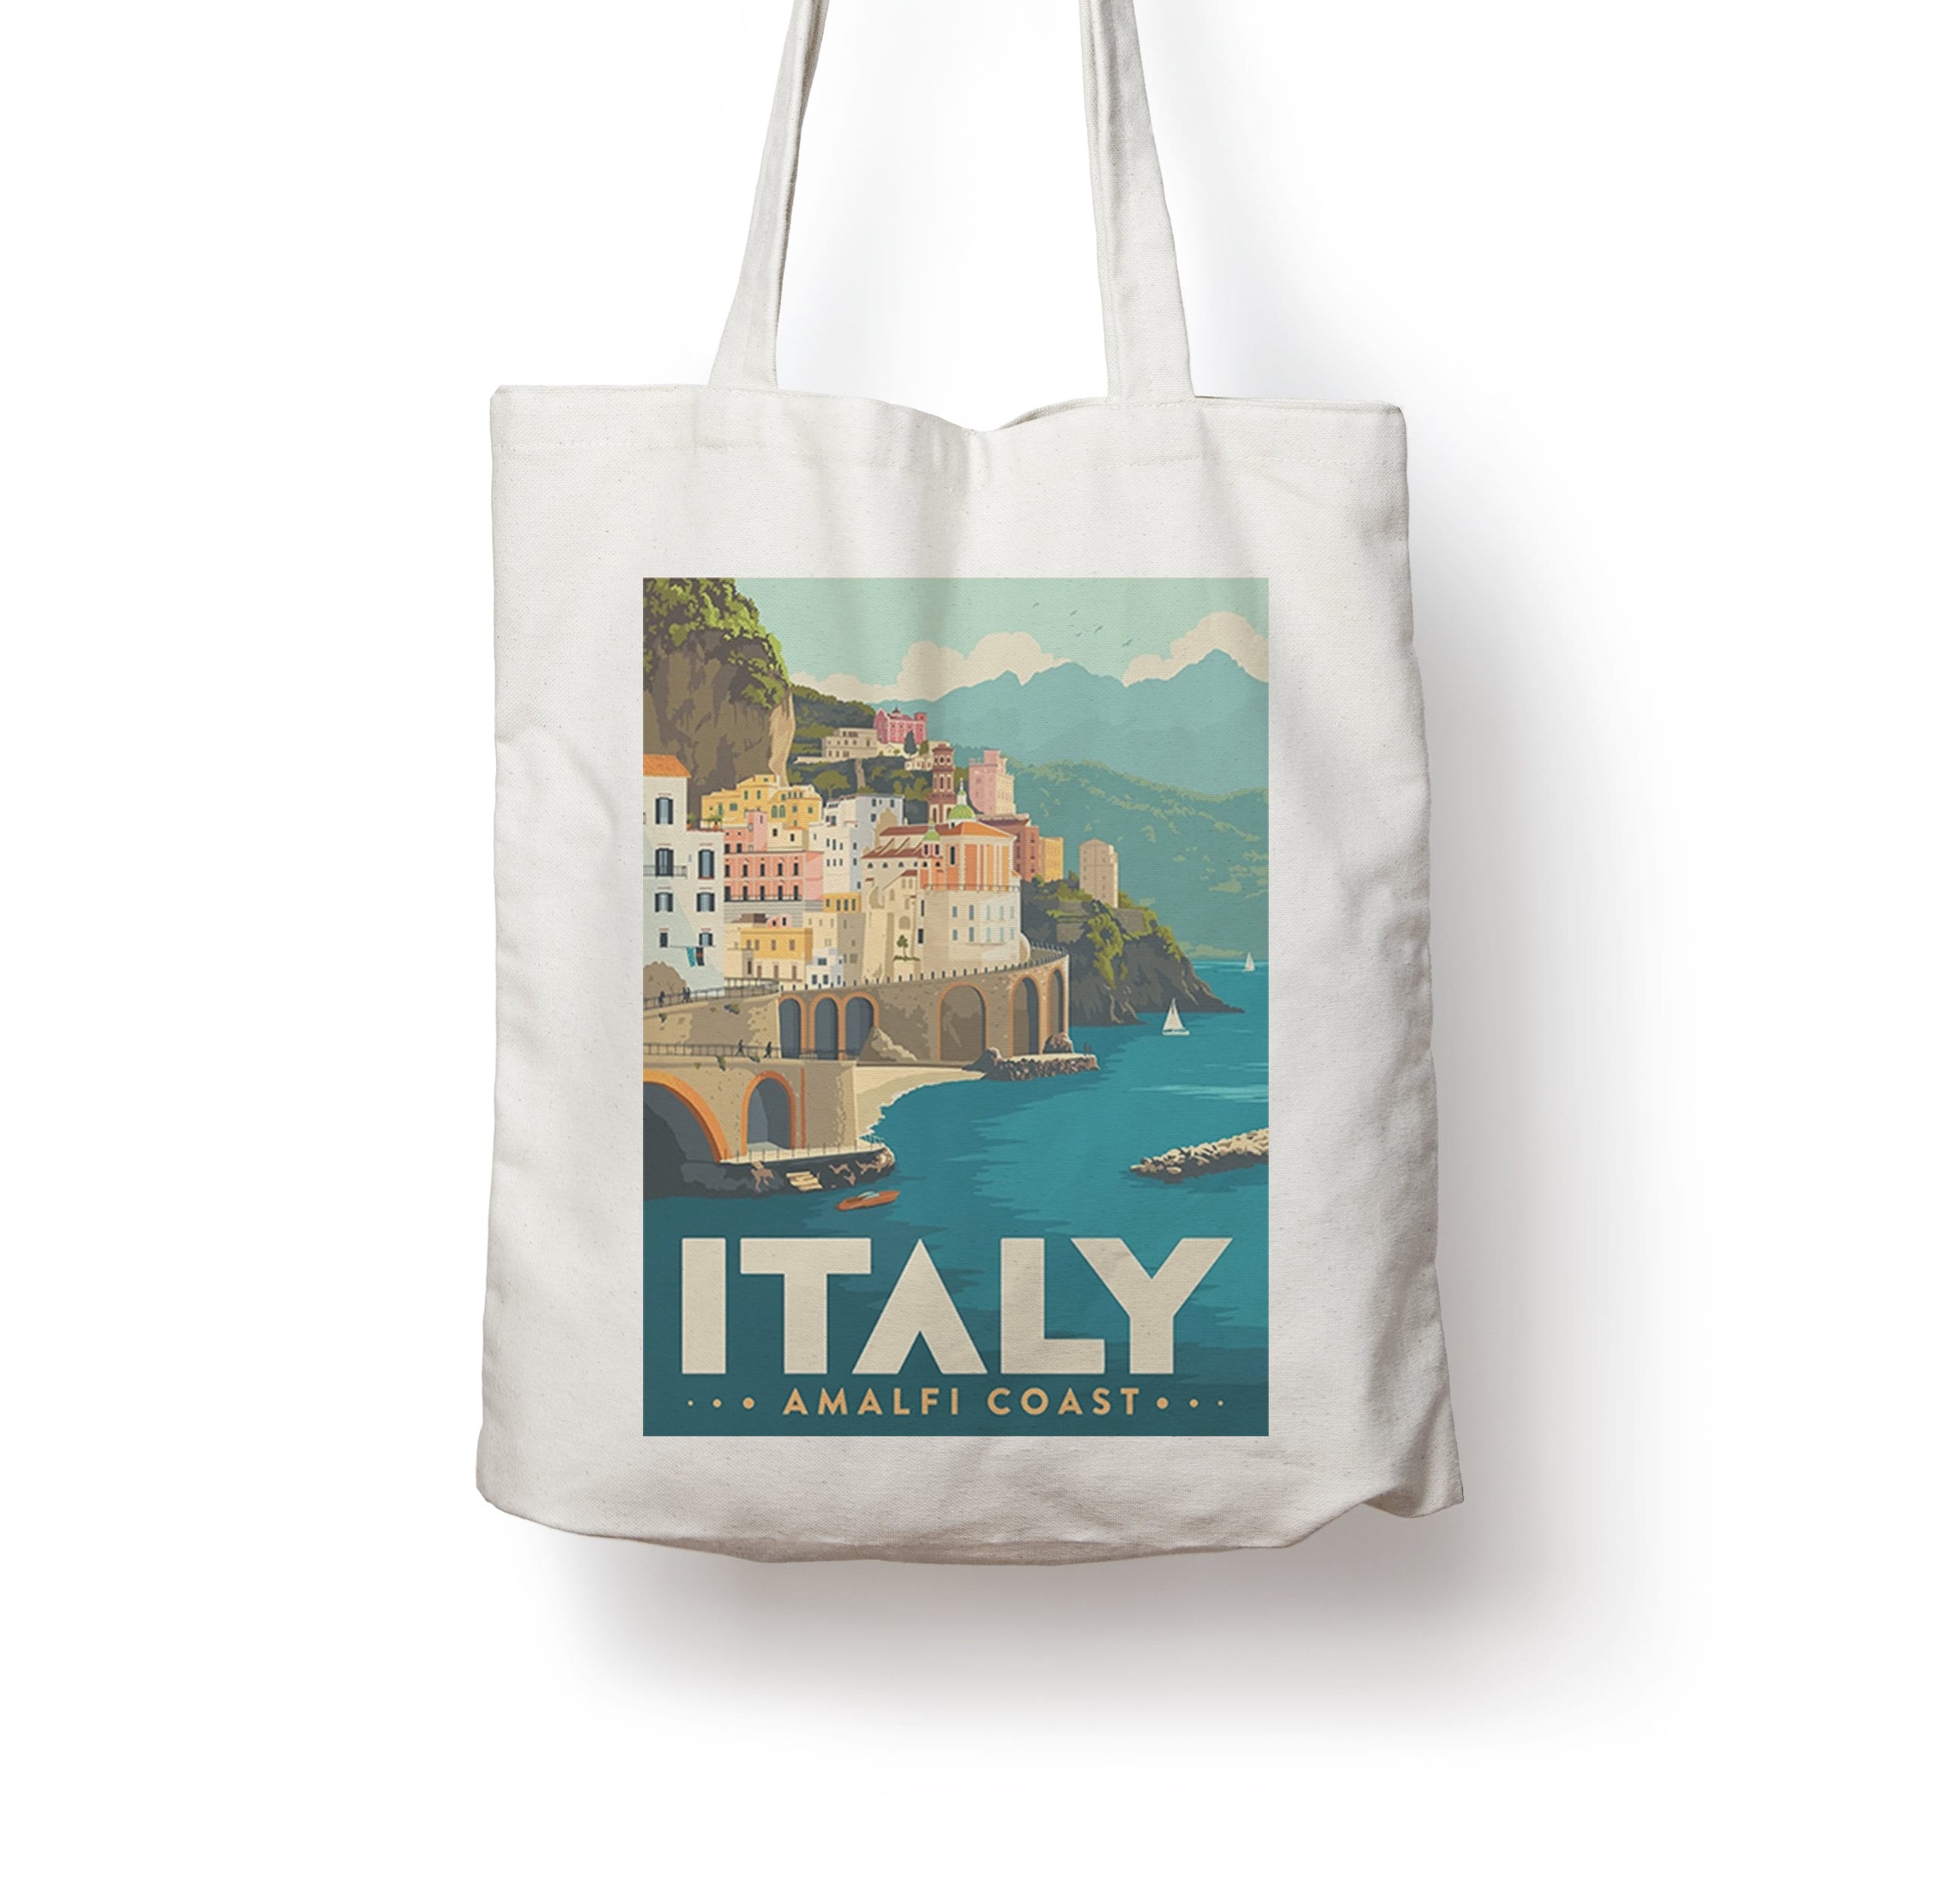 Amalfi Midi Leather Tote Bag - Blue